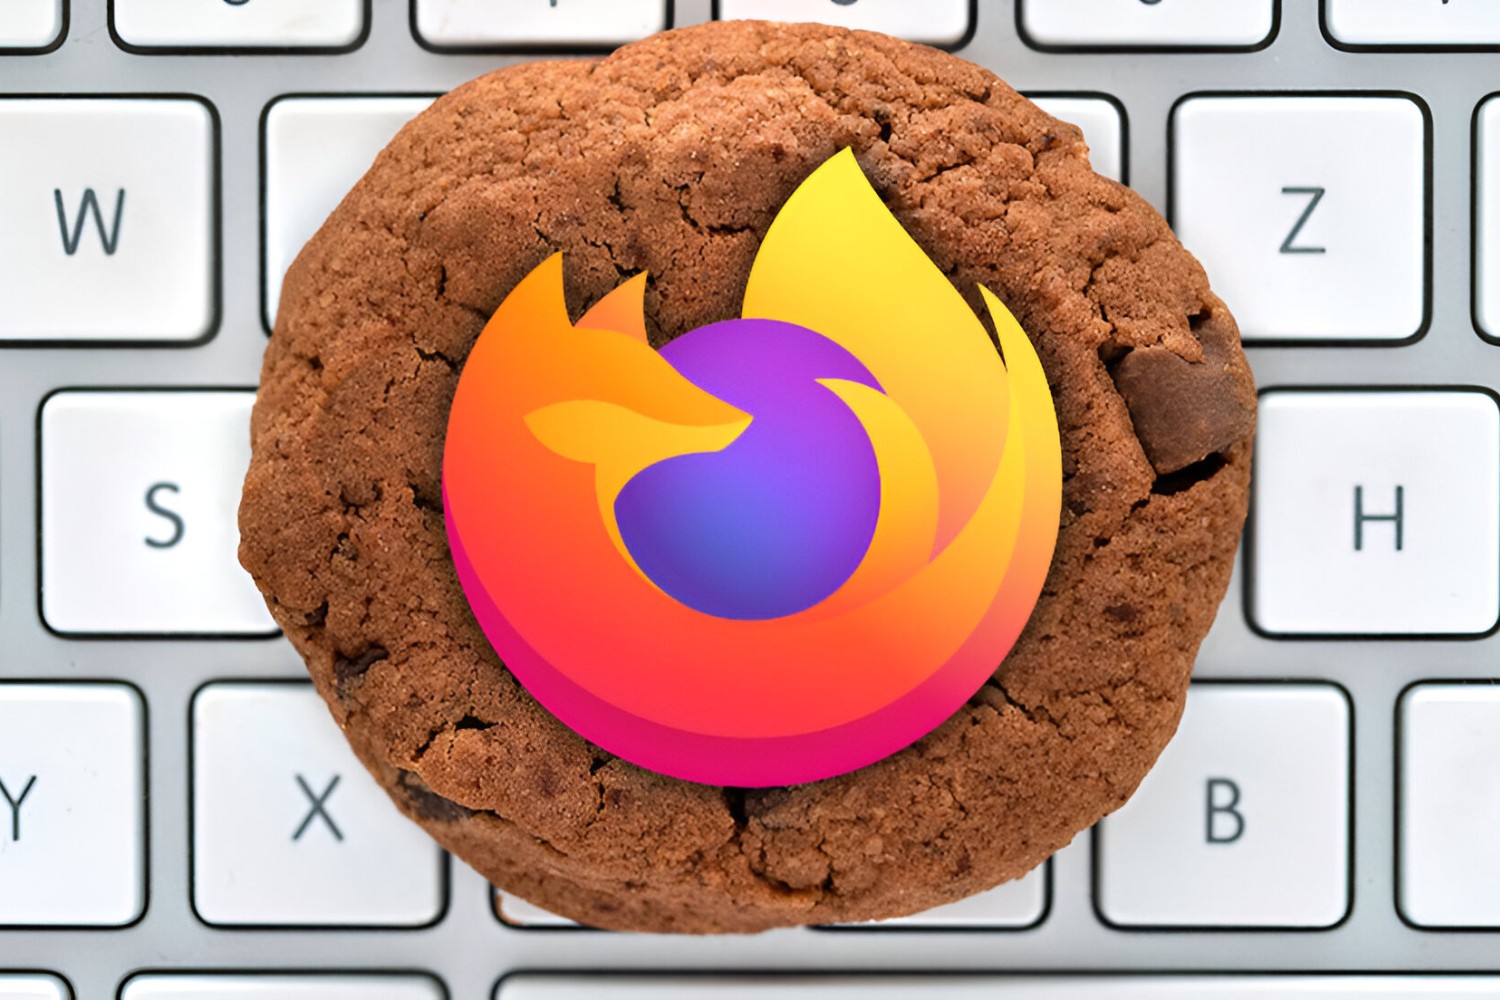 How To Export Firefox Cookies